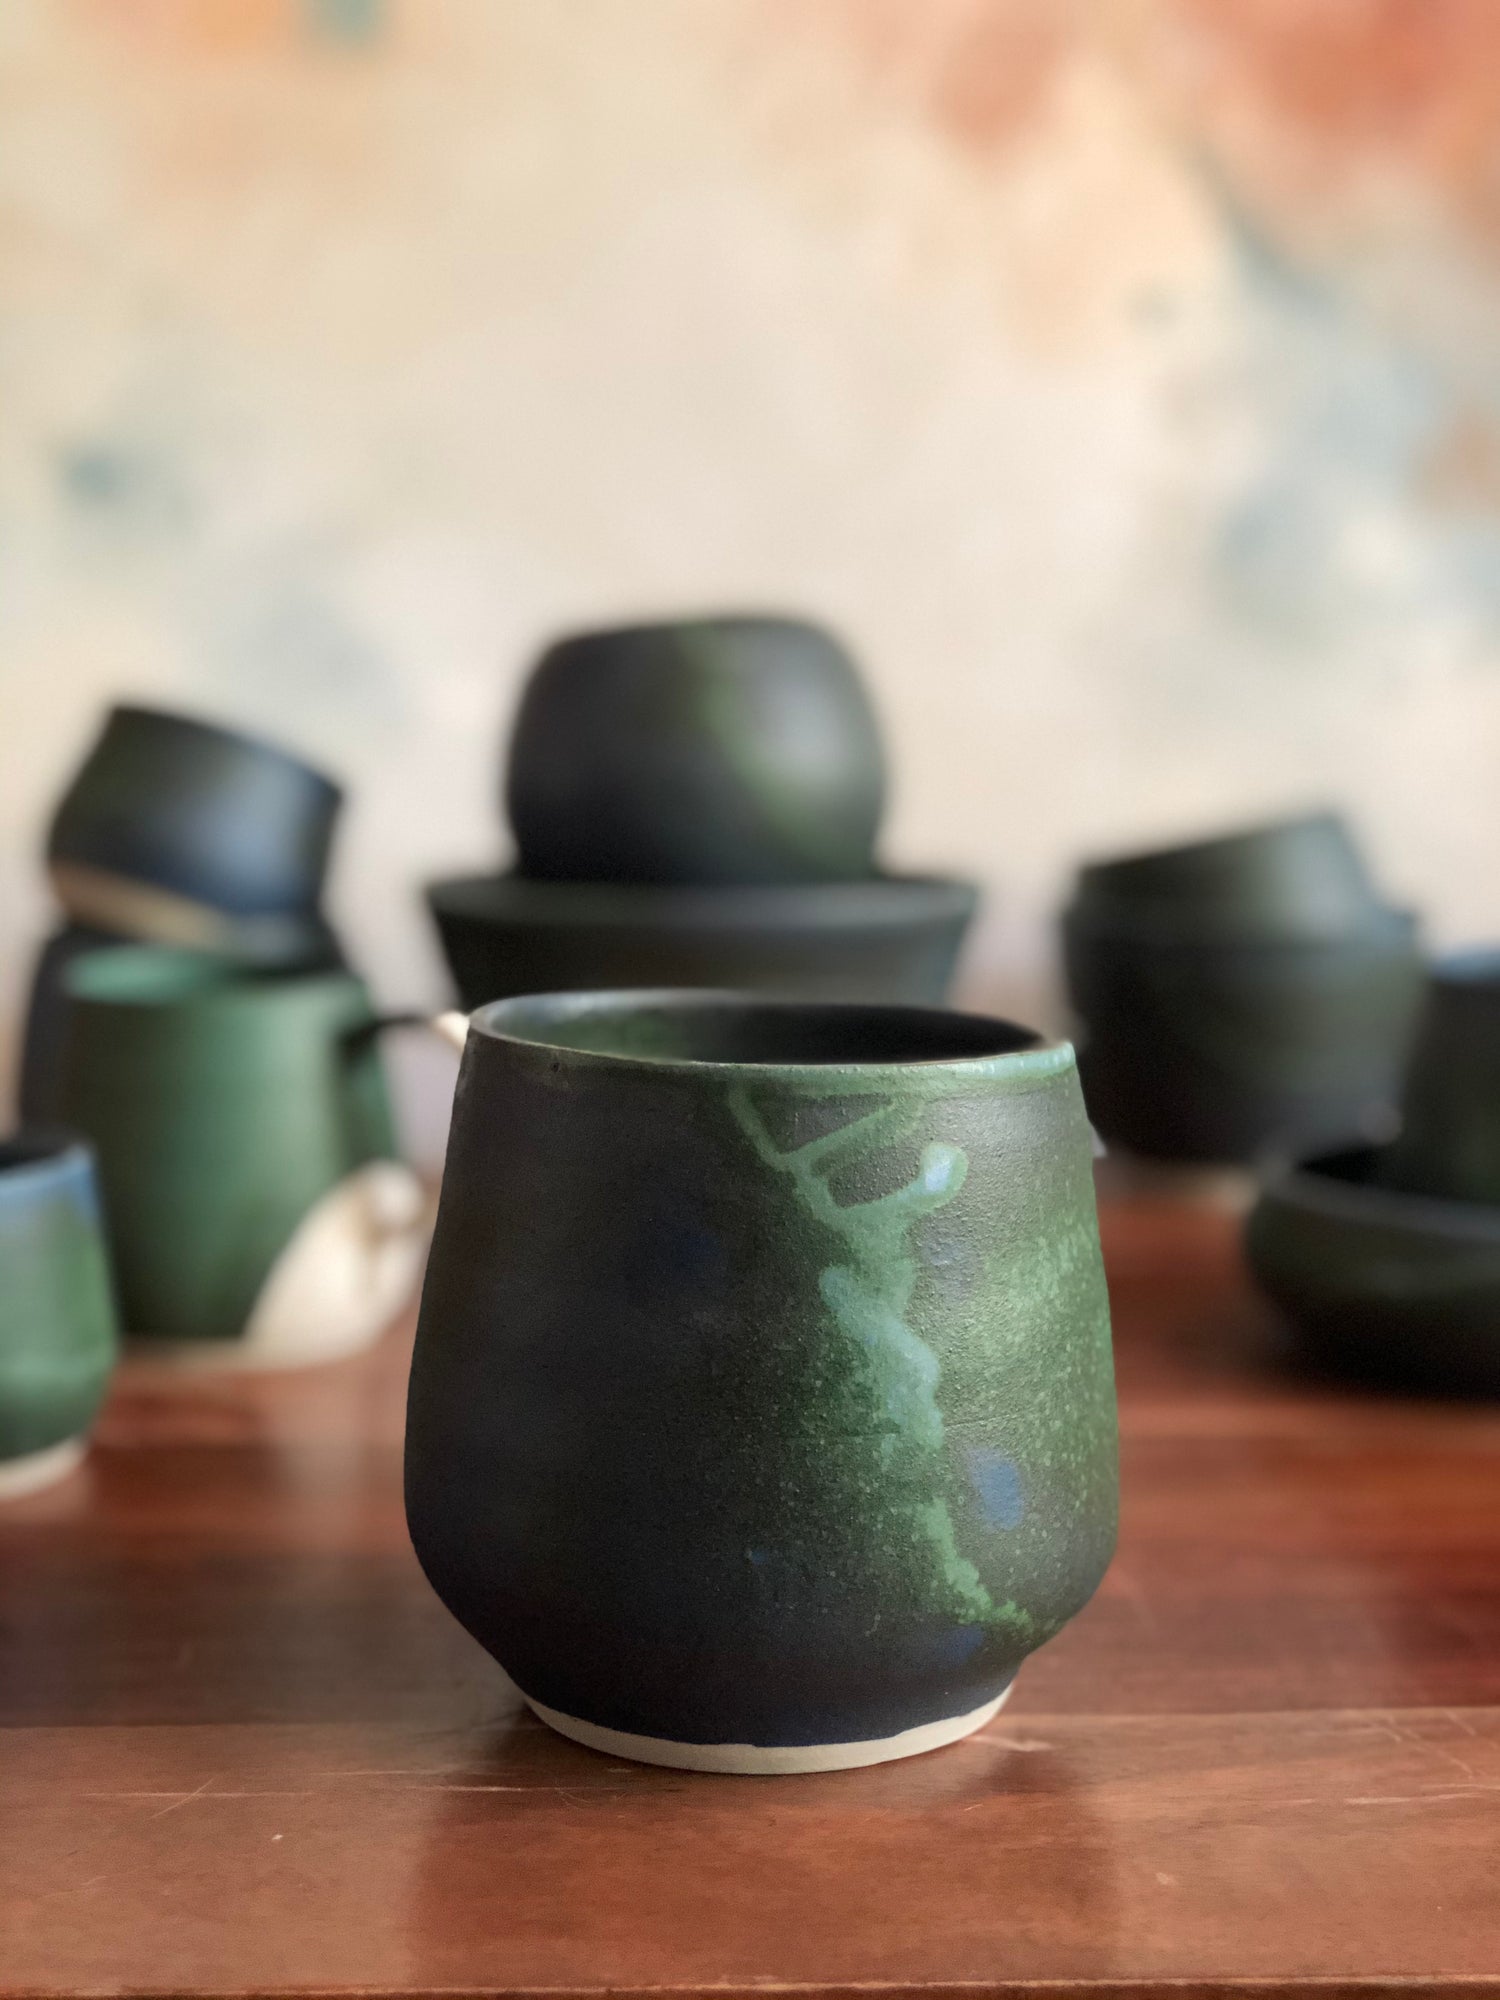 All ceramics